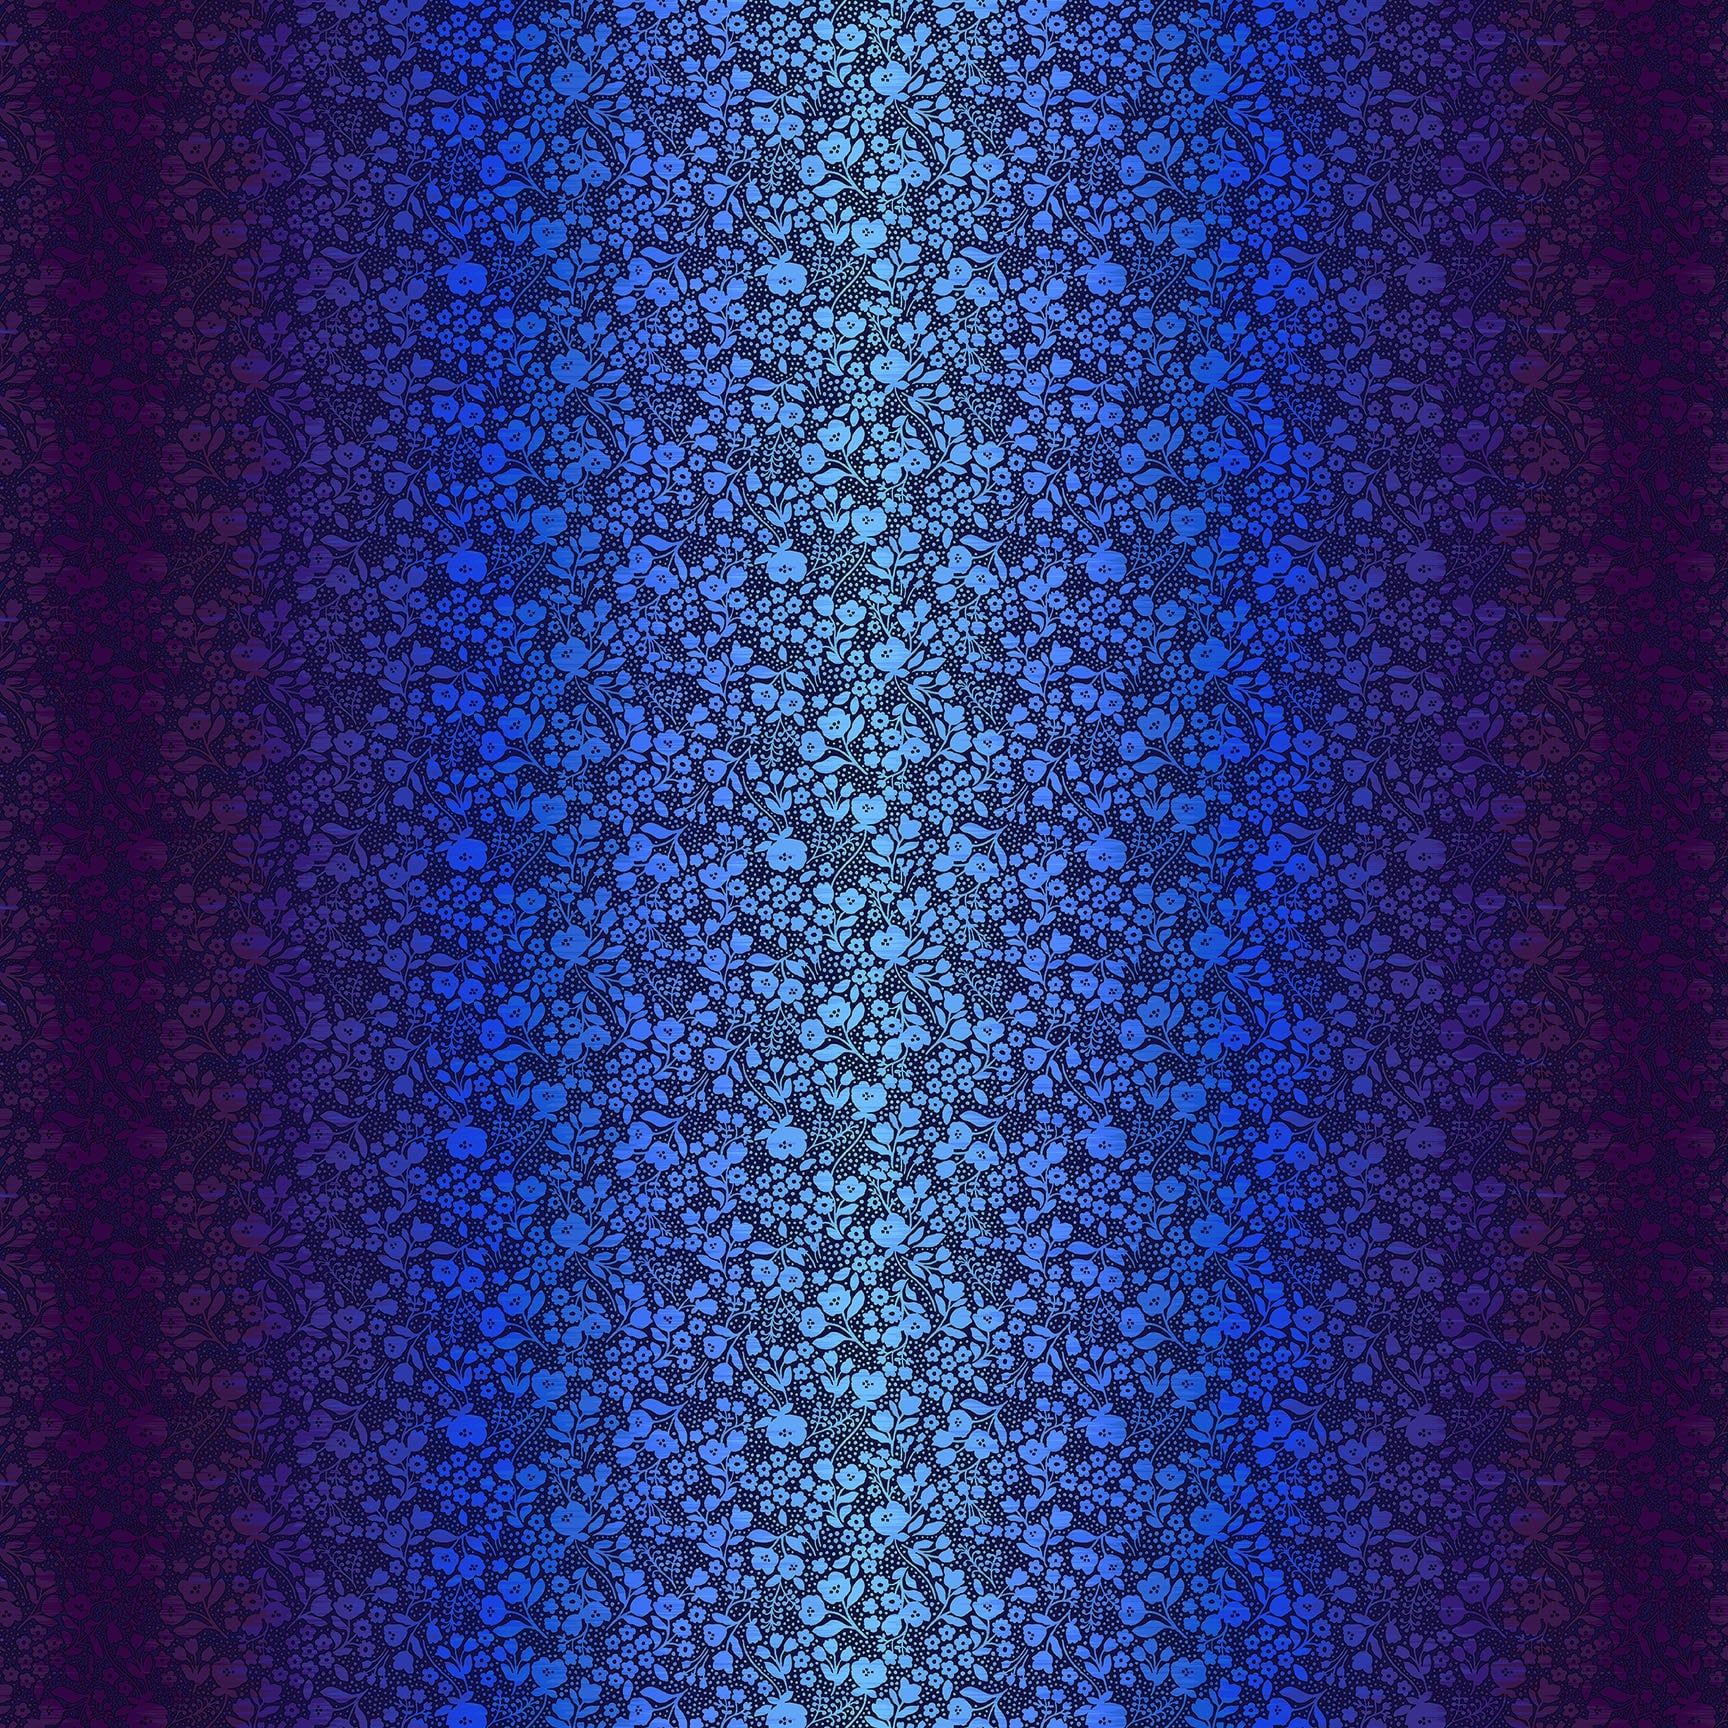 Shade Garden Quilt Fabric - Floral Ombre in Wild Indigo (Purple/Blue) - 6939-71